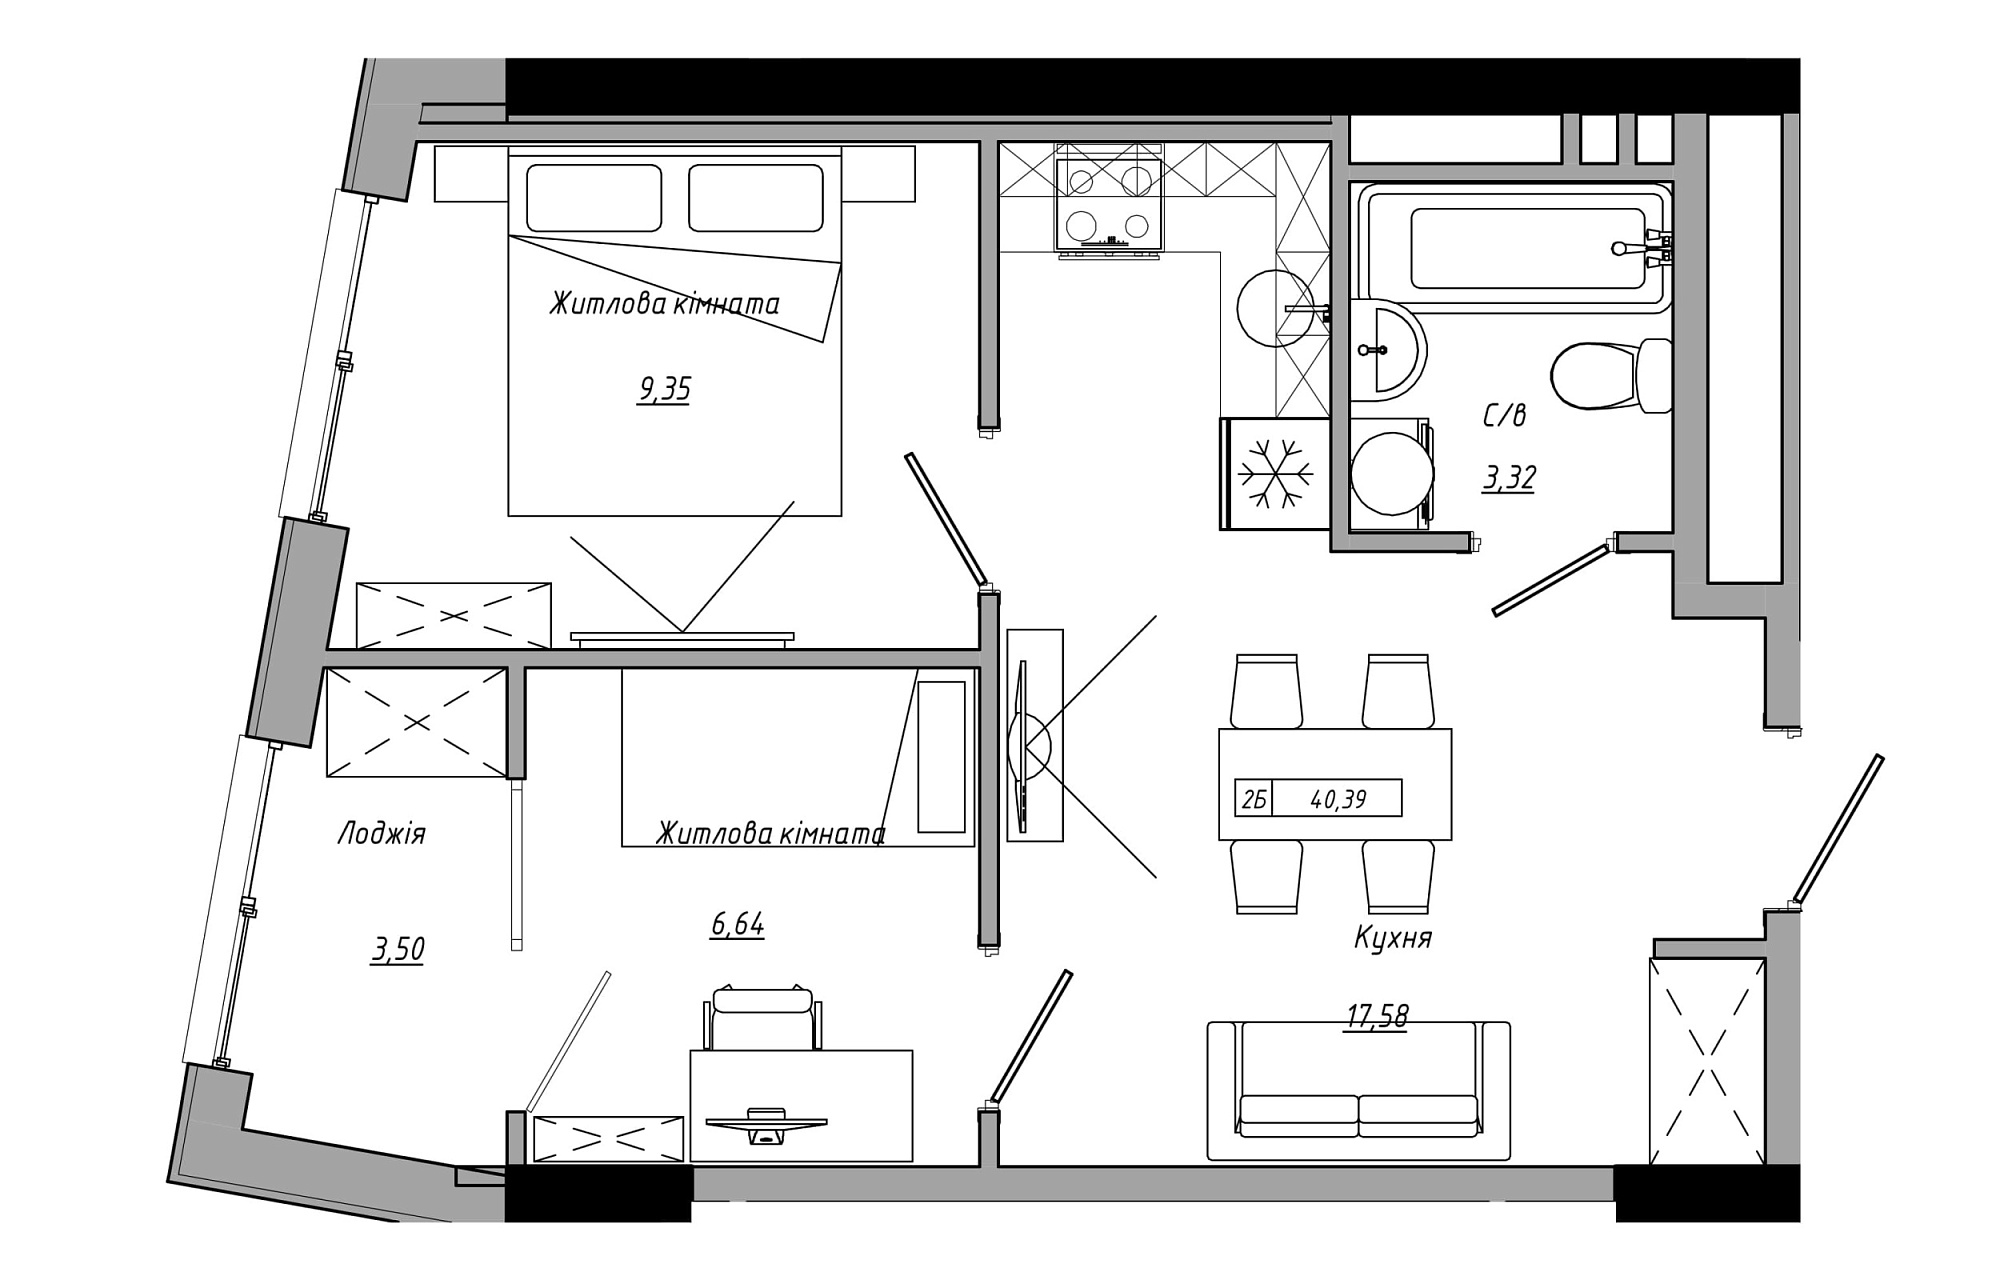 Планировка 2-к квартира площей 40.39м2, AB-21-05/00007.